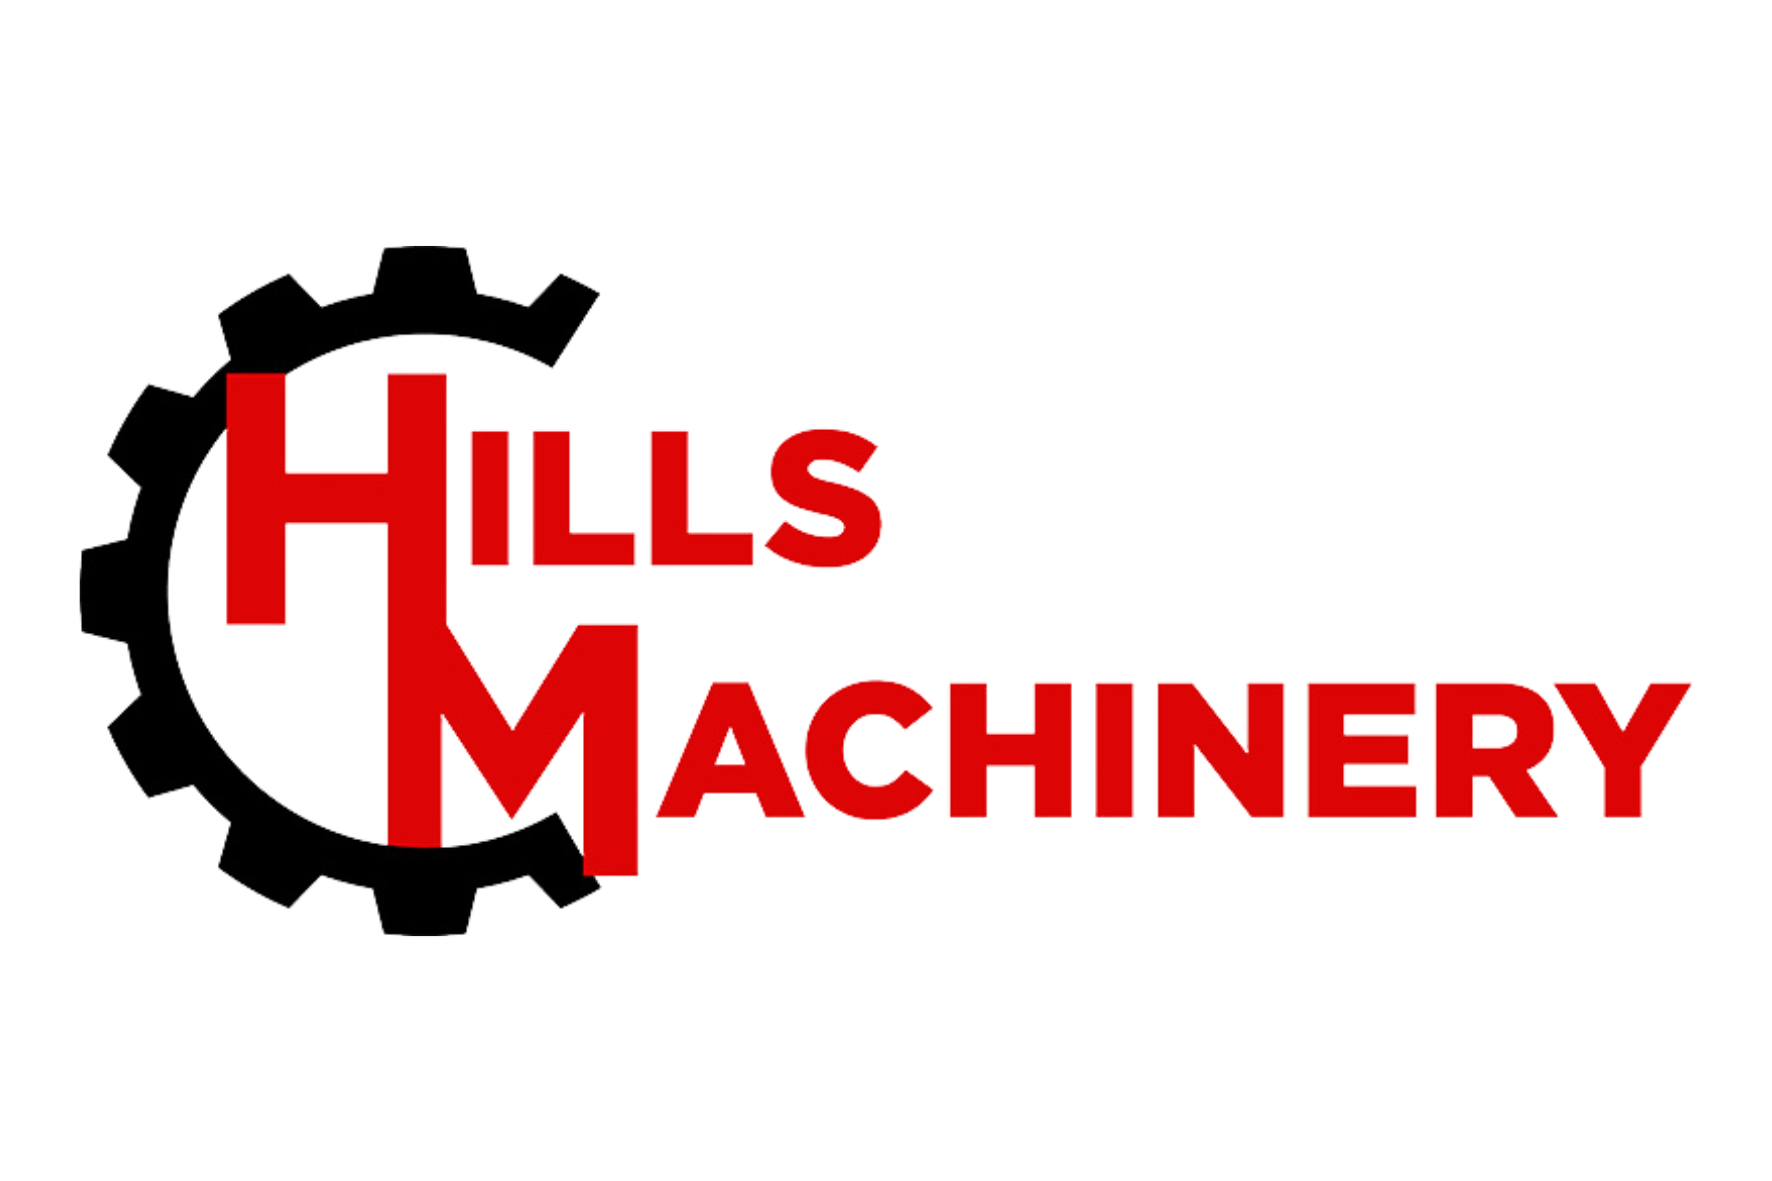 Hills Machinery